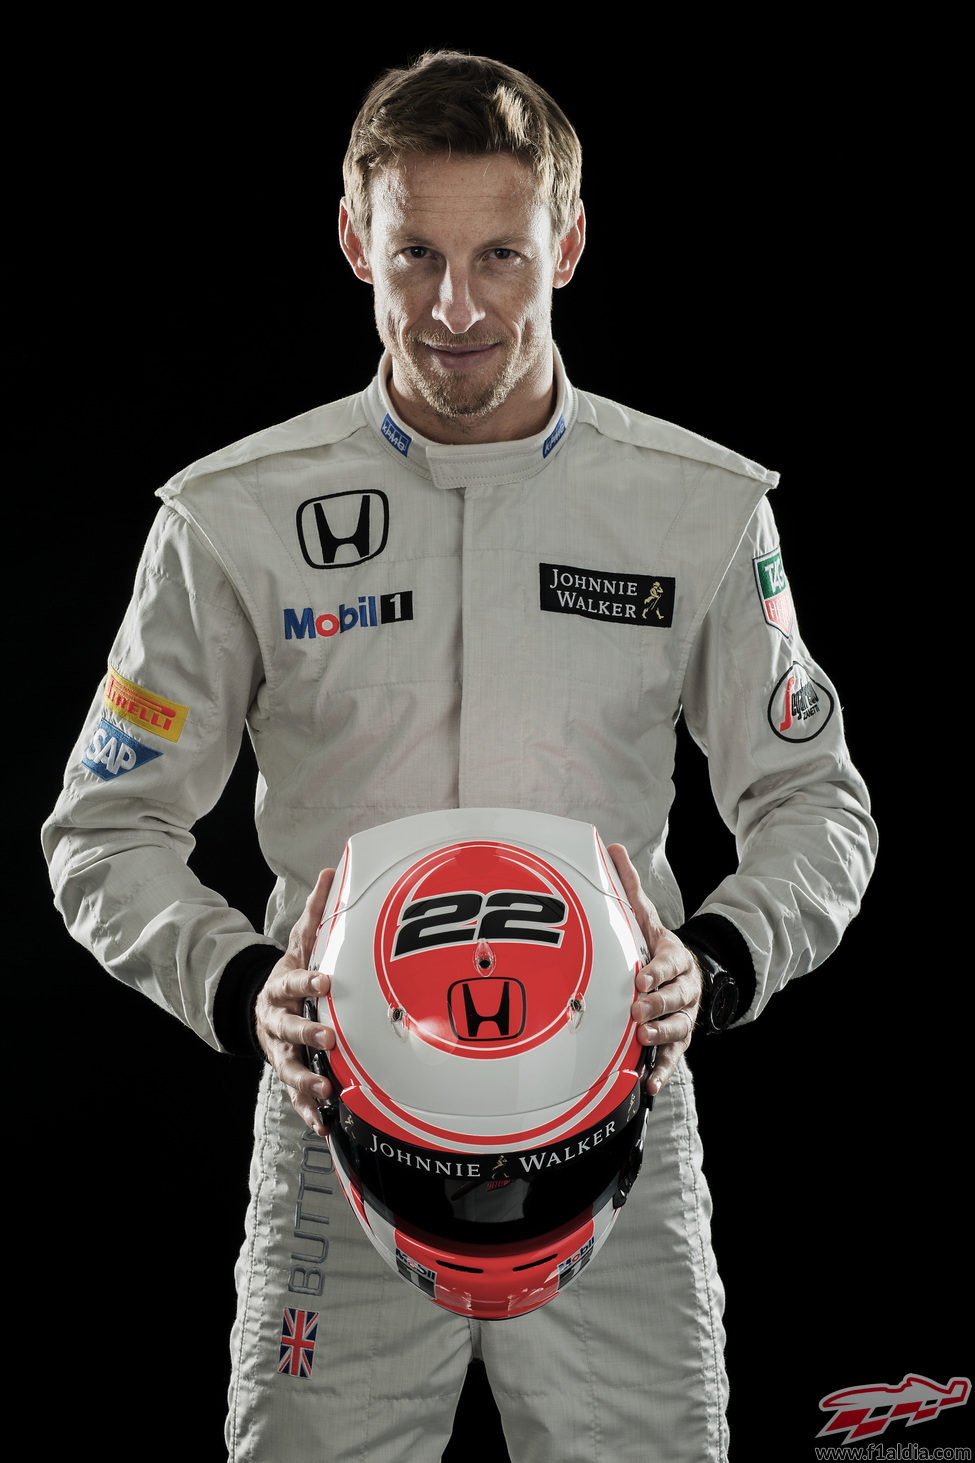 Jenson Button con su nuevo casco